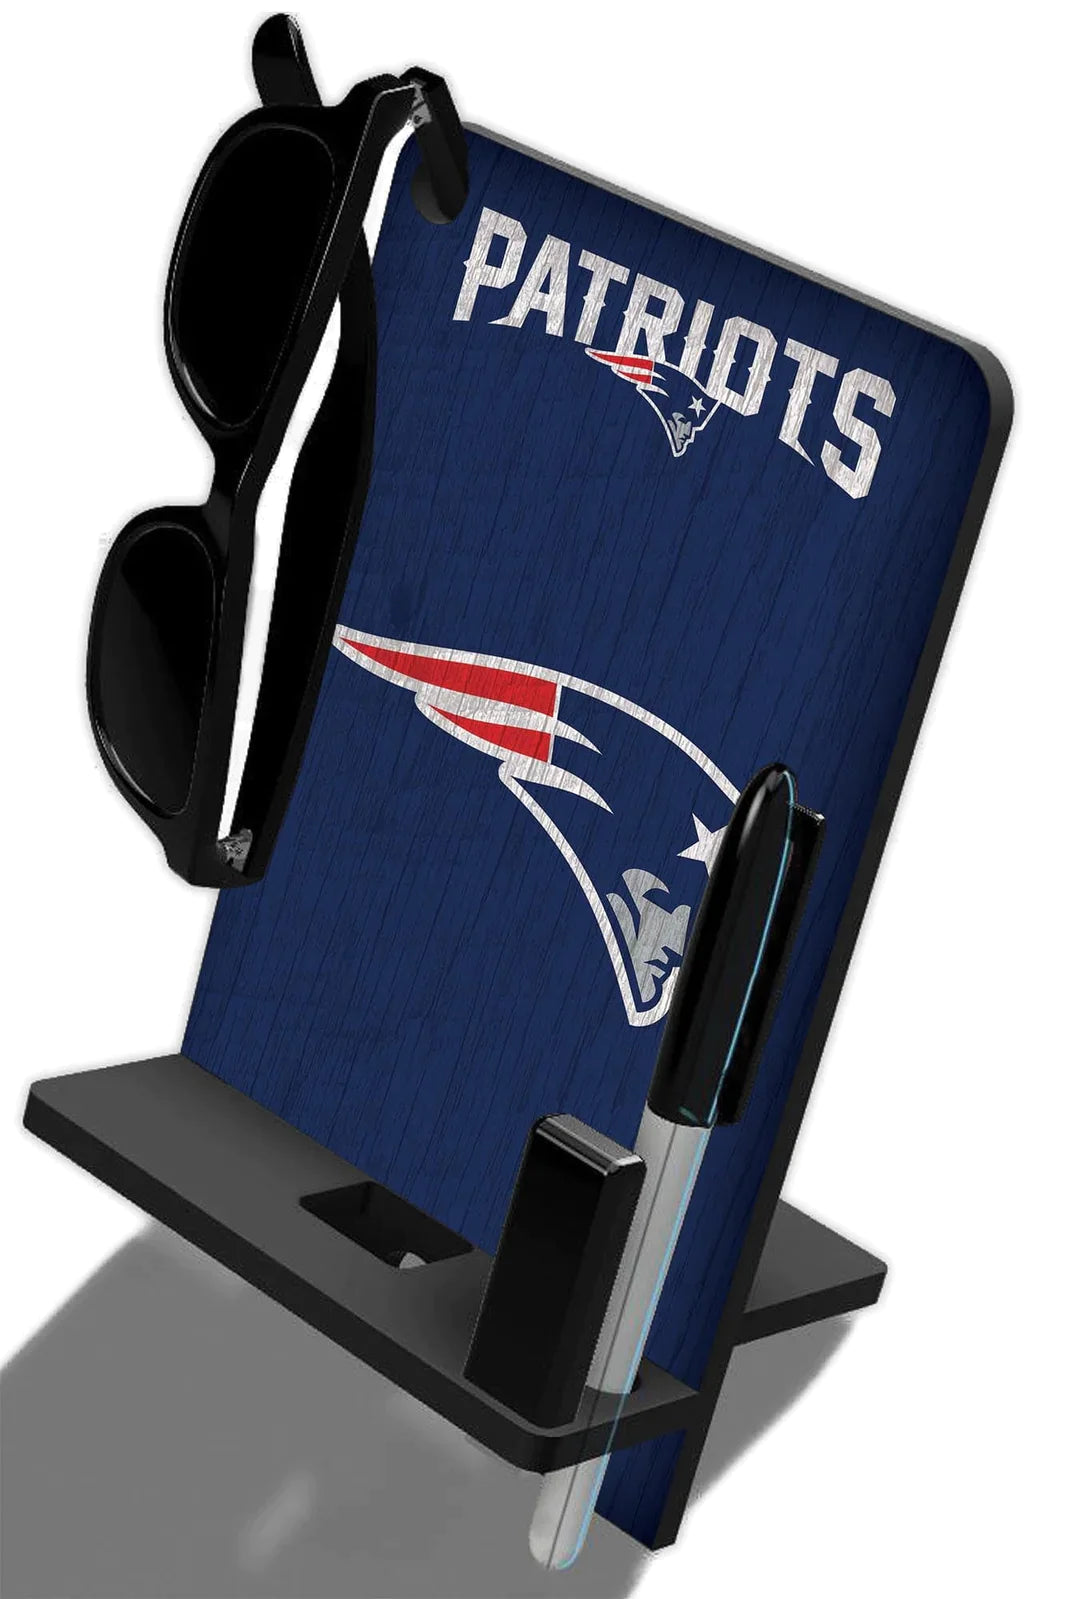 Base de escritorio para Celular Phone Stand NFL Patriots